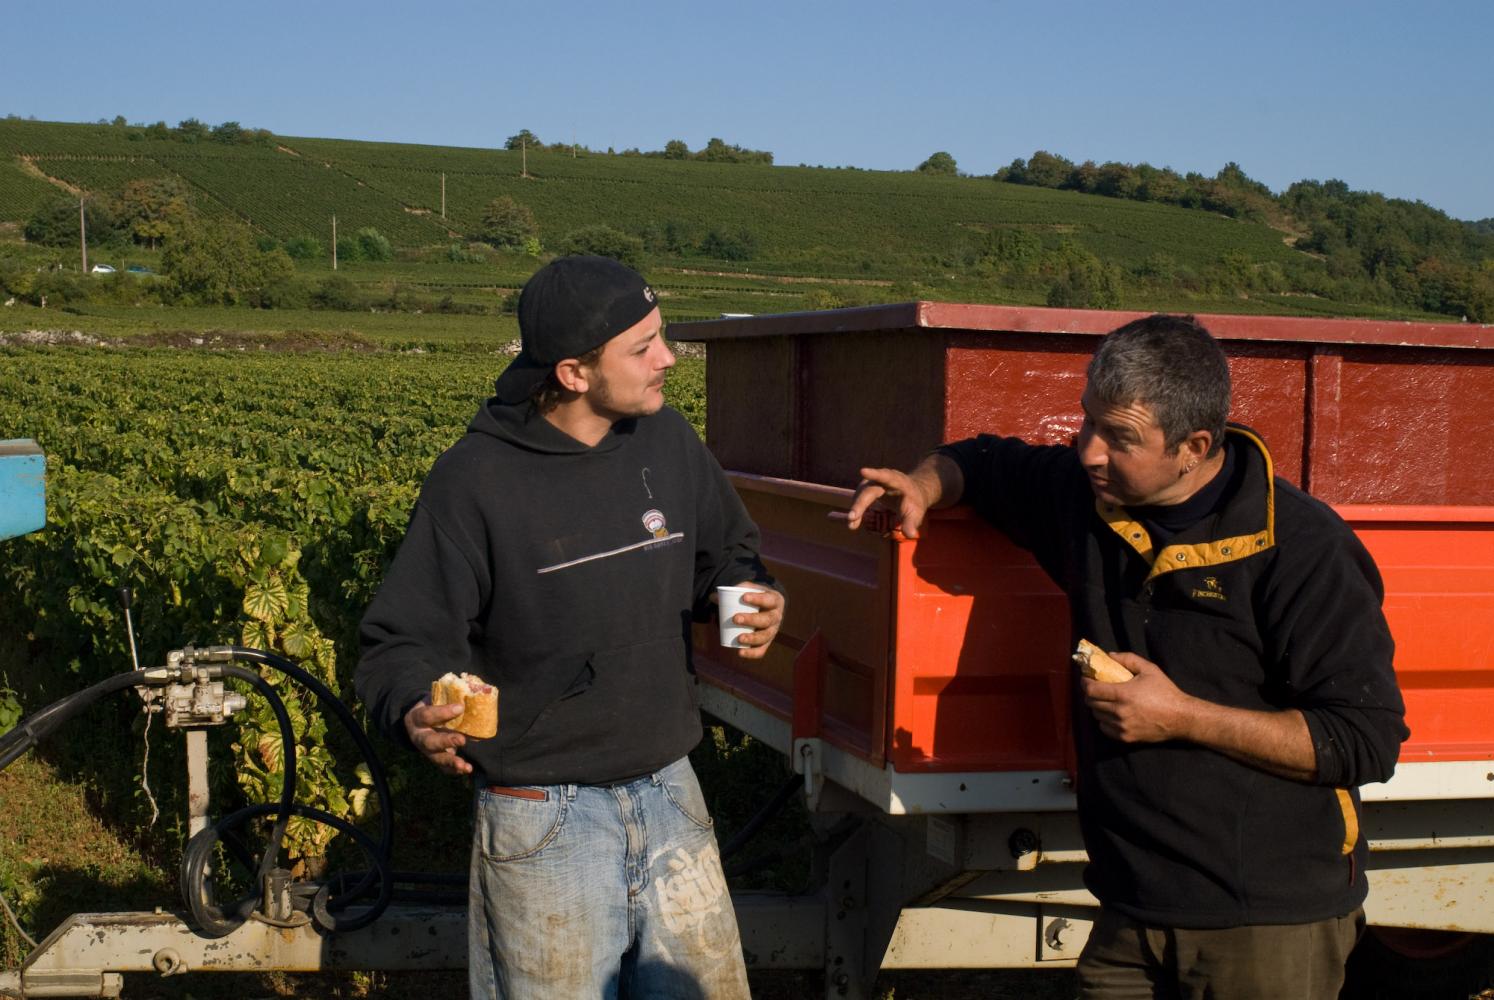 Le casse-croûte à la main, appuyés à la benne orange, deux vendangeurs ont une discussion animée. Chassagne-Montrachet, Bourgogne, septembre 2009.